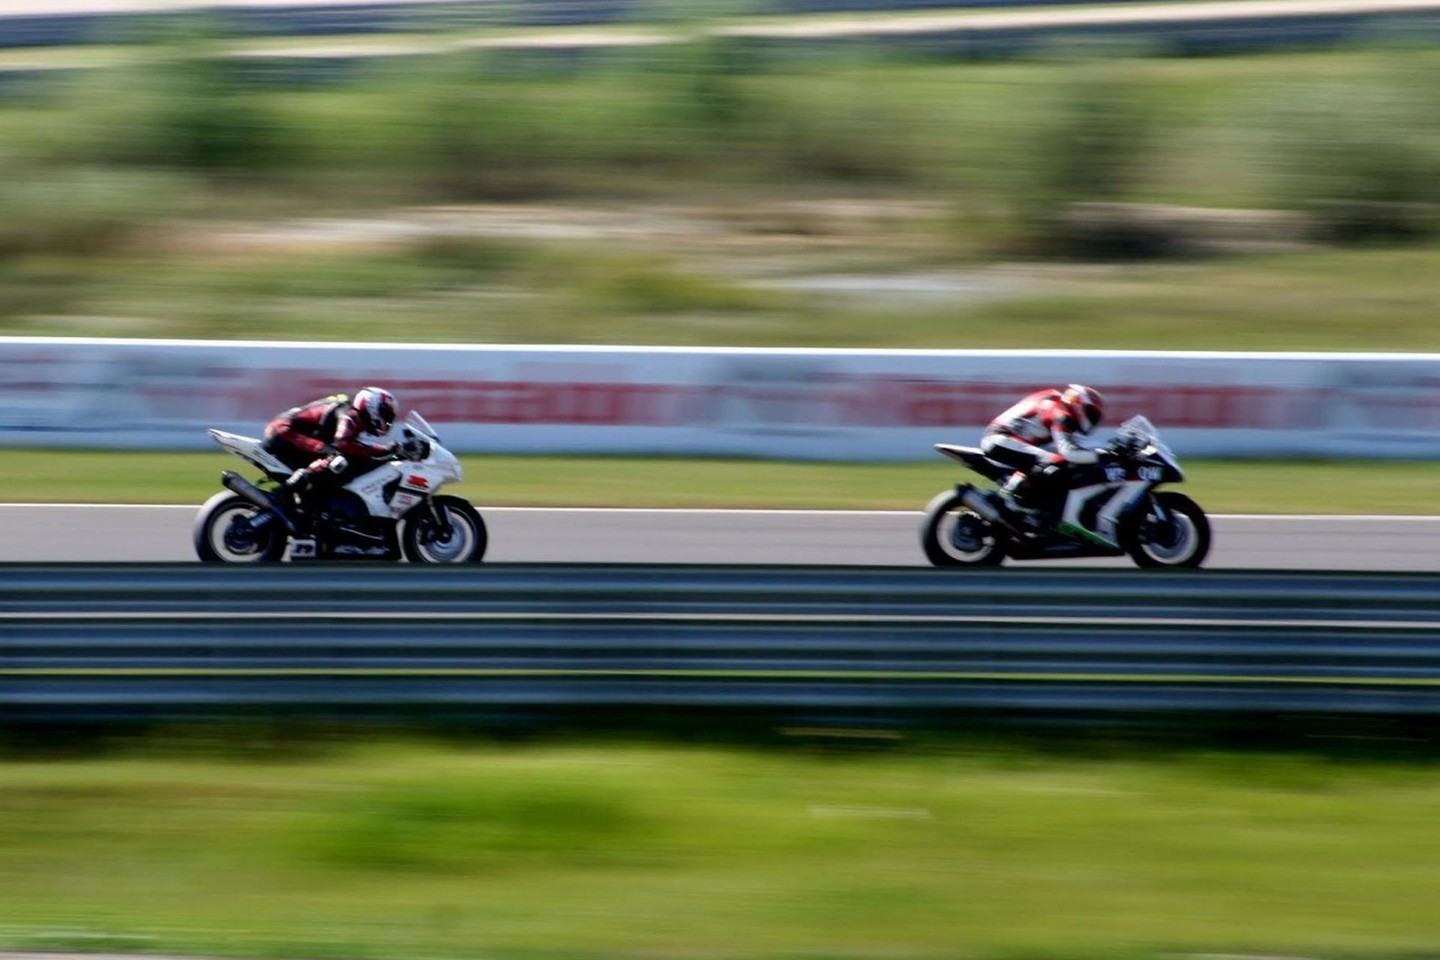 Lietuvių motociklų sporto klubas „Coffee Racers“ organizuojamos varžybos vyks ir Slovakijoje esančioje „Slovakia Ring“ trasoje.<br>Organizatorių nuotr.